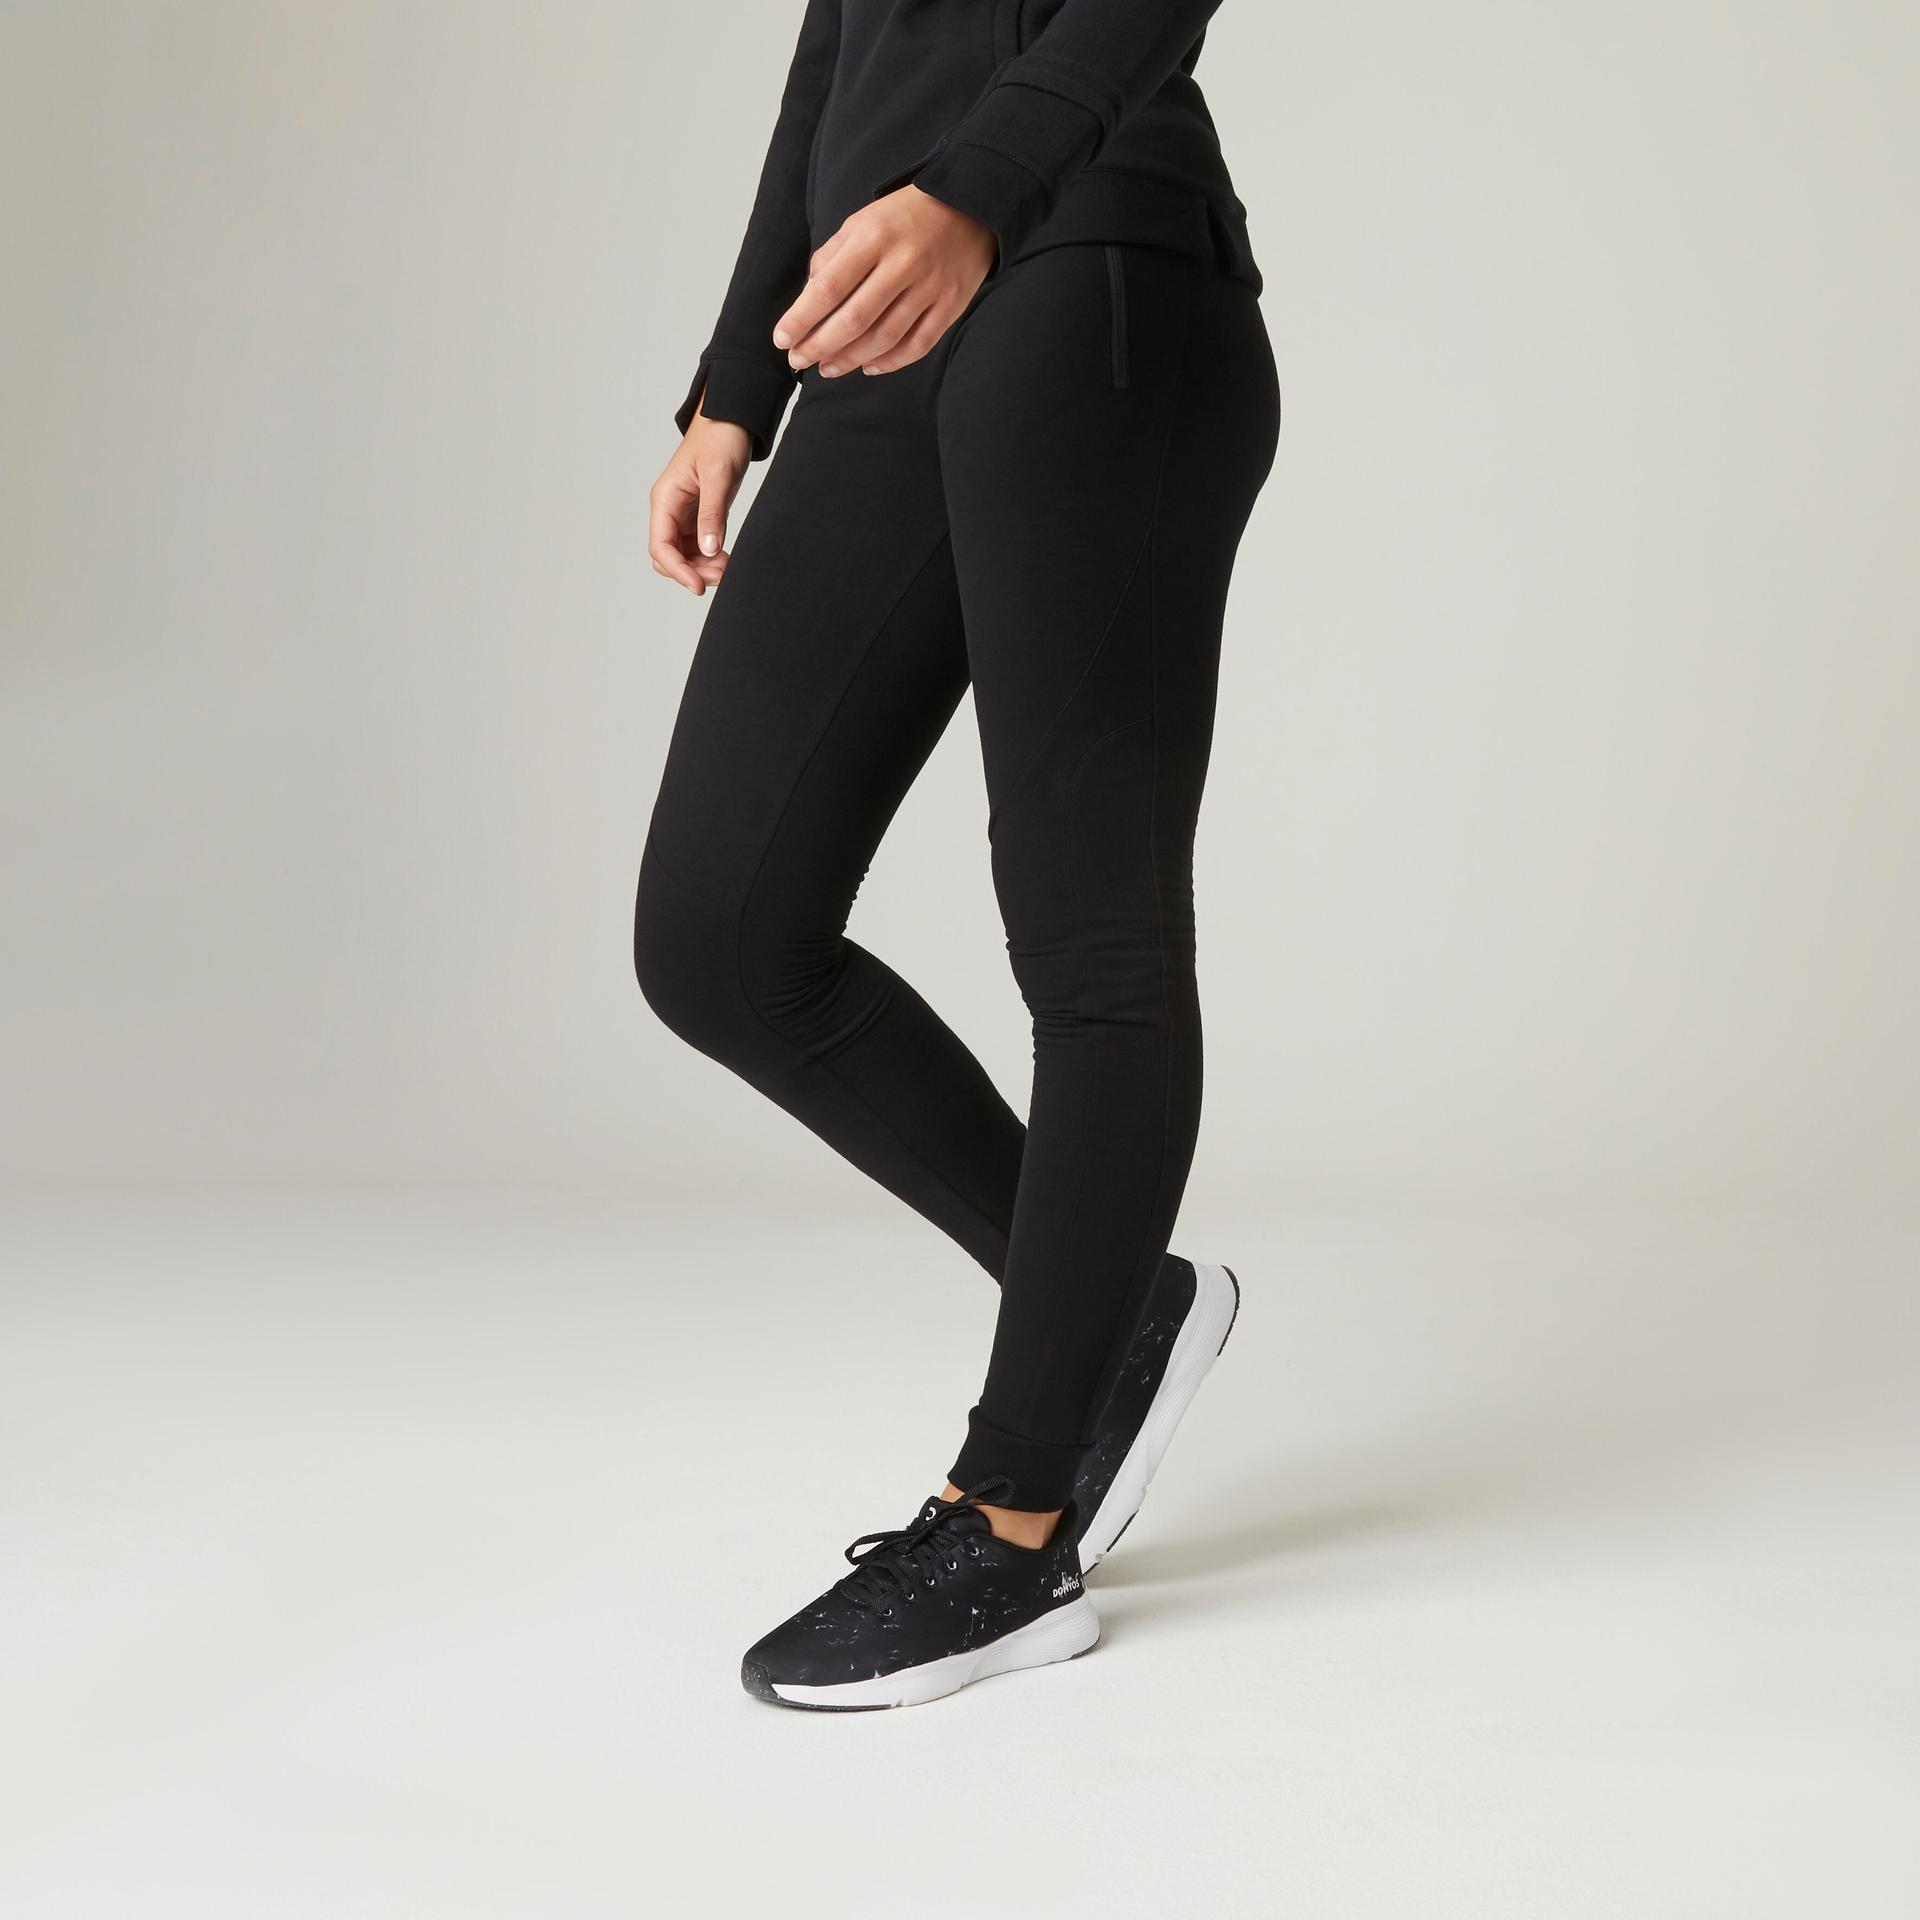 women's cotton fleece slim fit gym joggers 510 - black